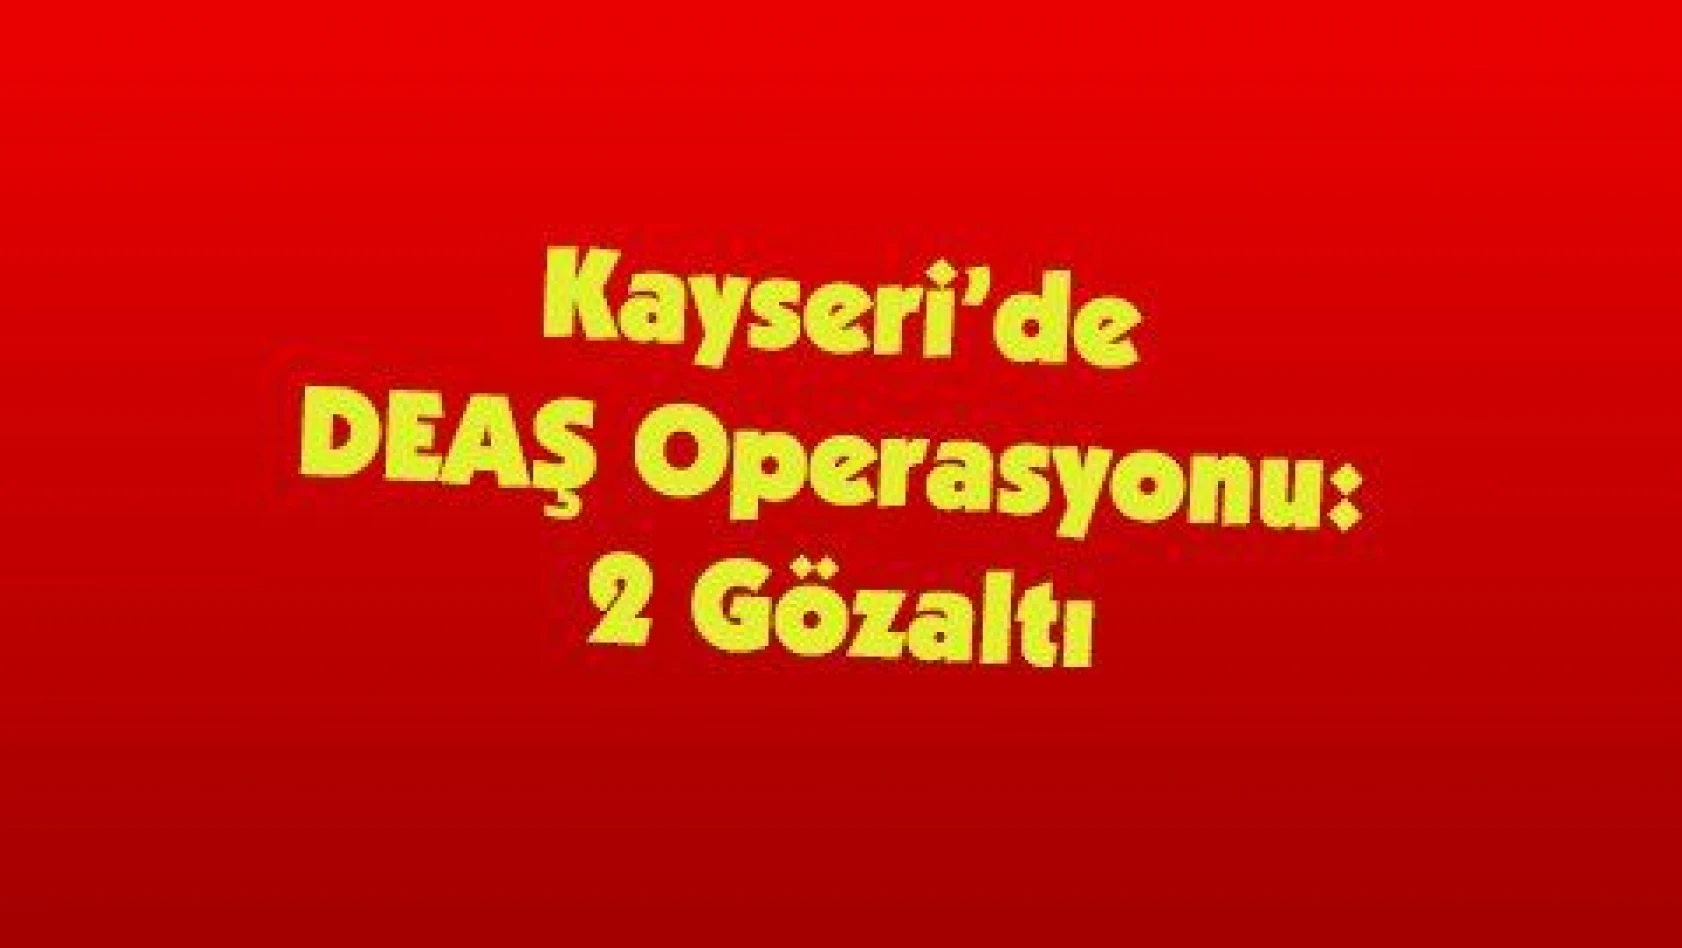 Kayseri'de DEAŞ Operasyonu: 2 Gözaltı